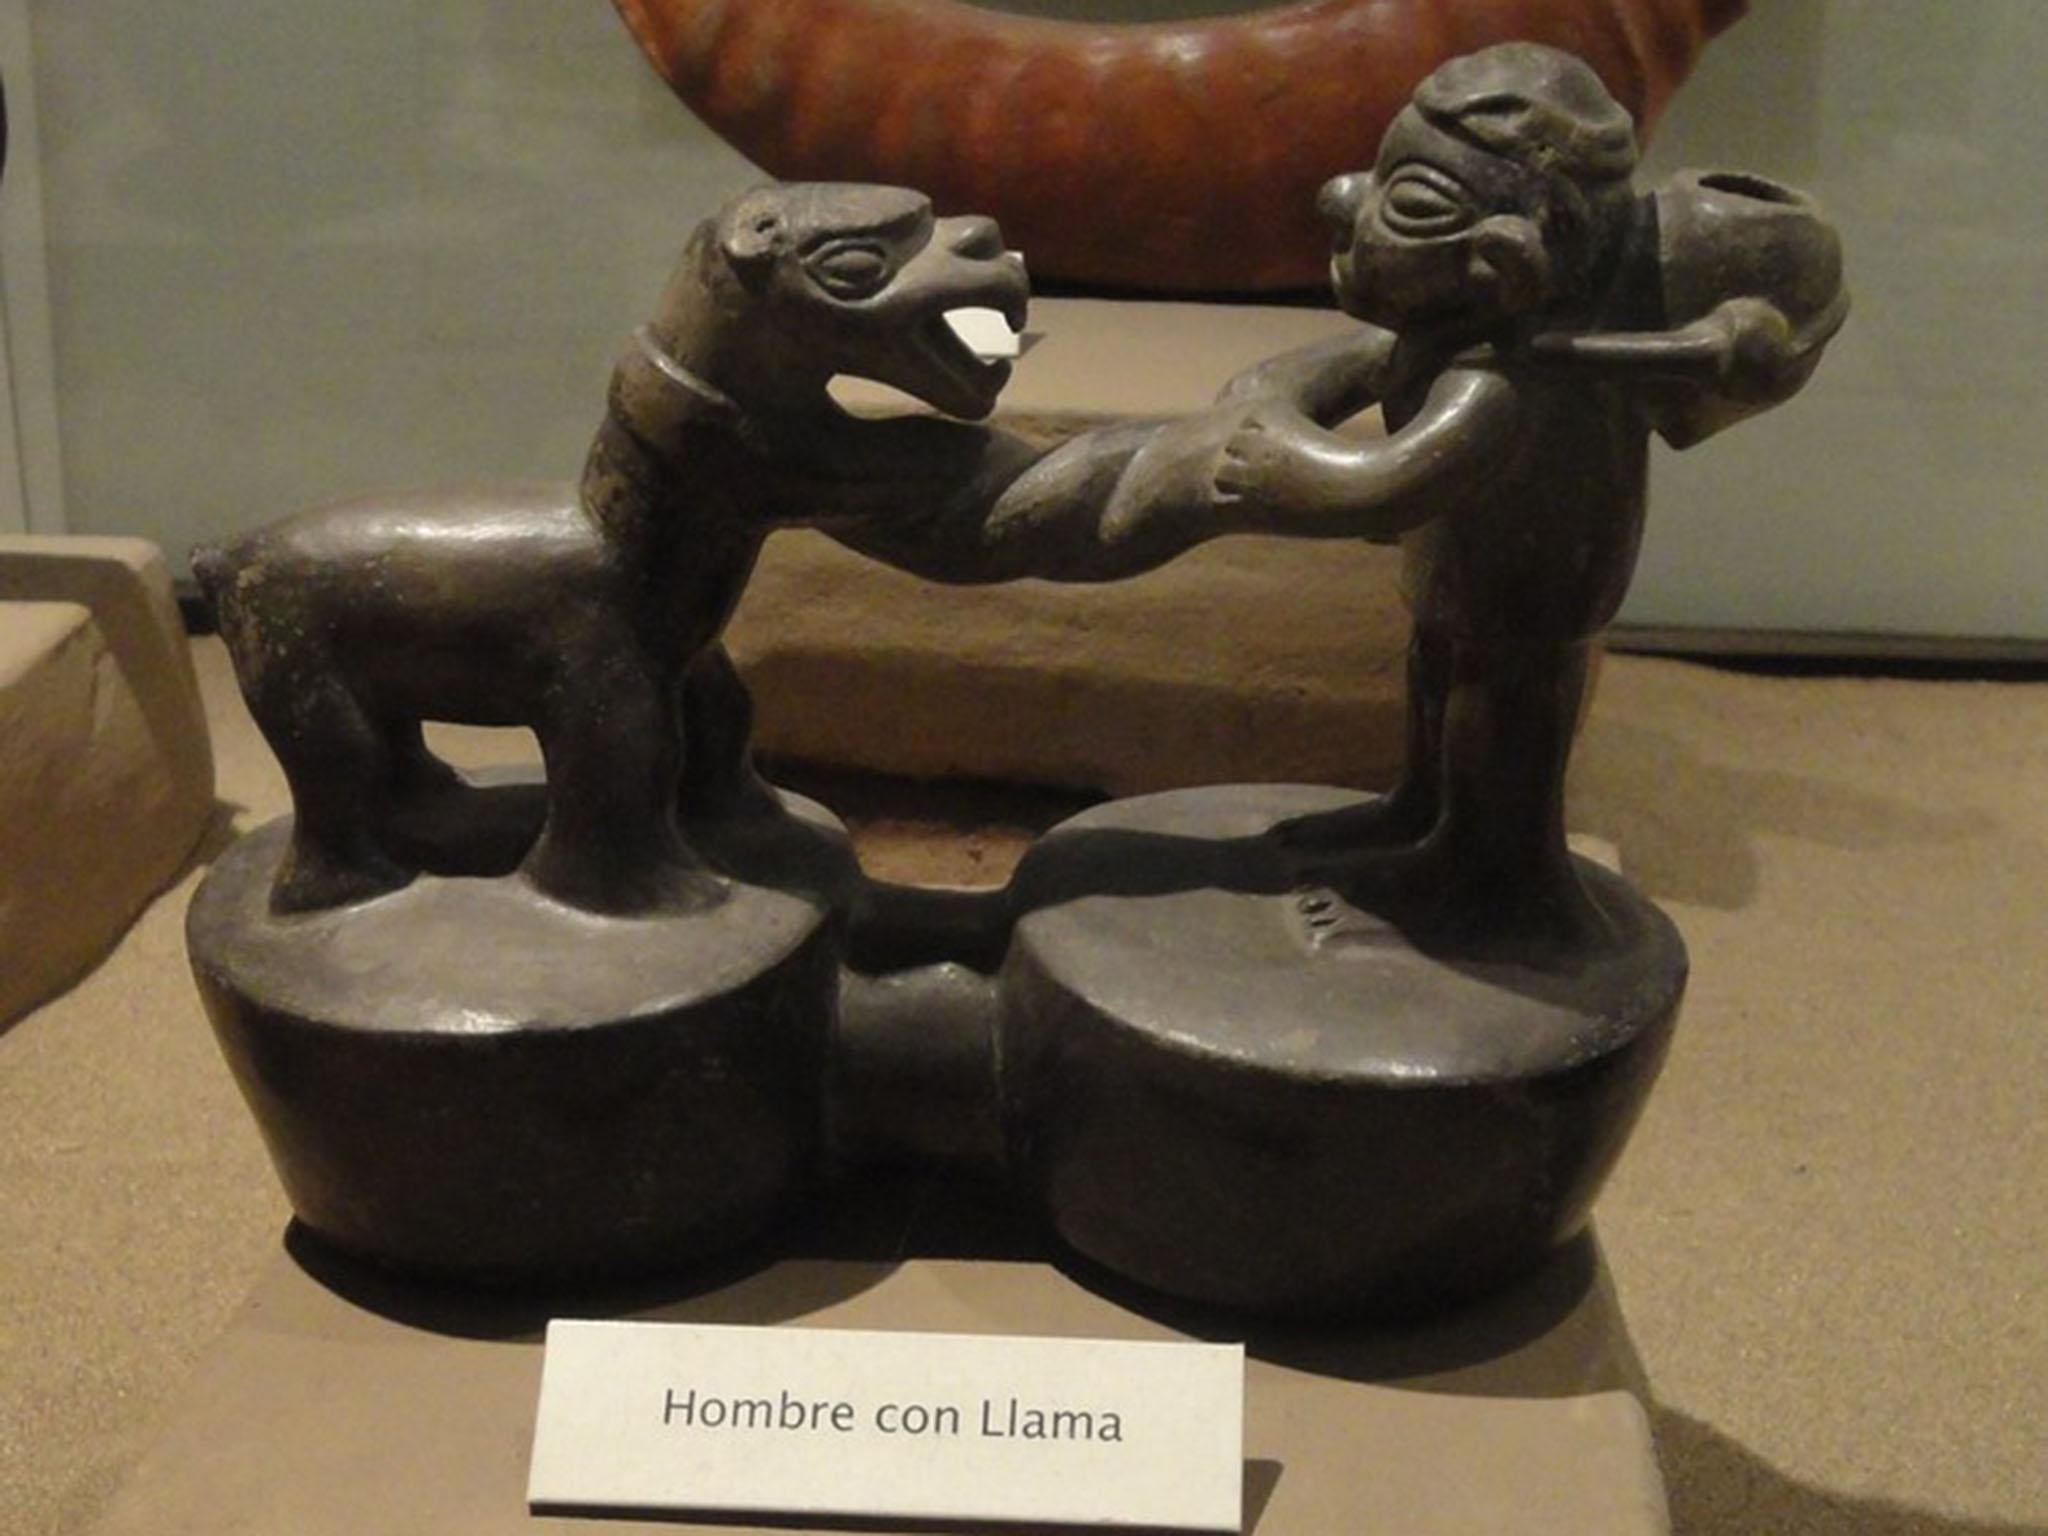 Llama figurine, Chimu culture (c900-1470AD) (Author provided)